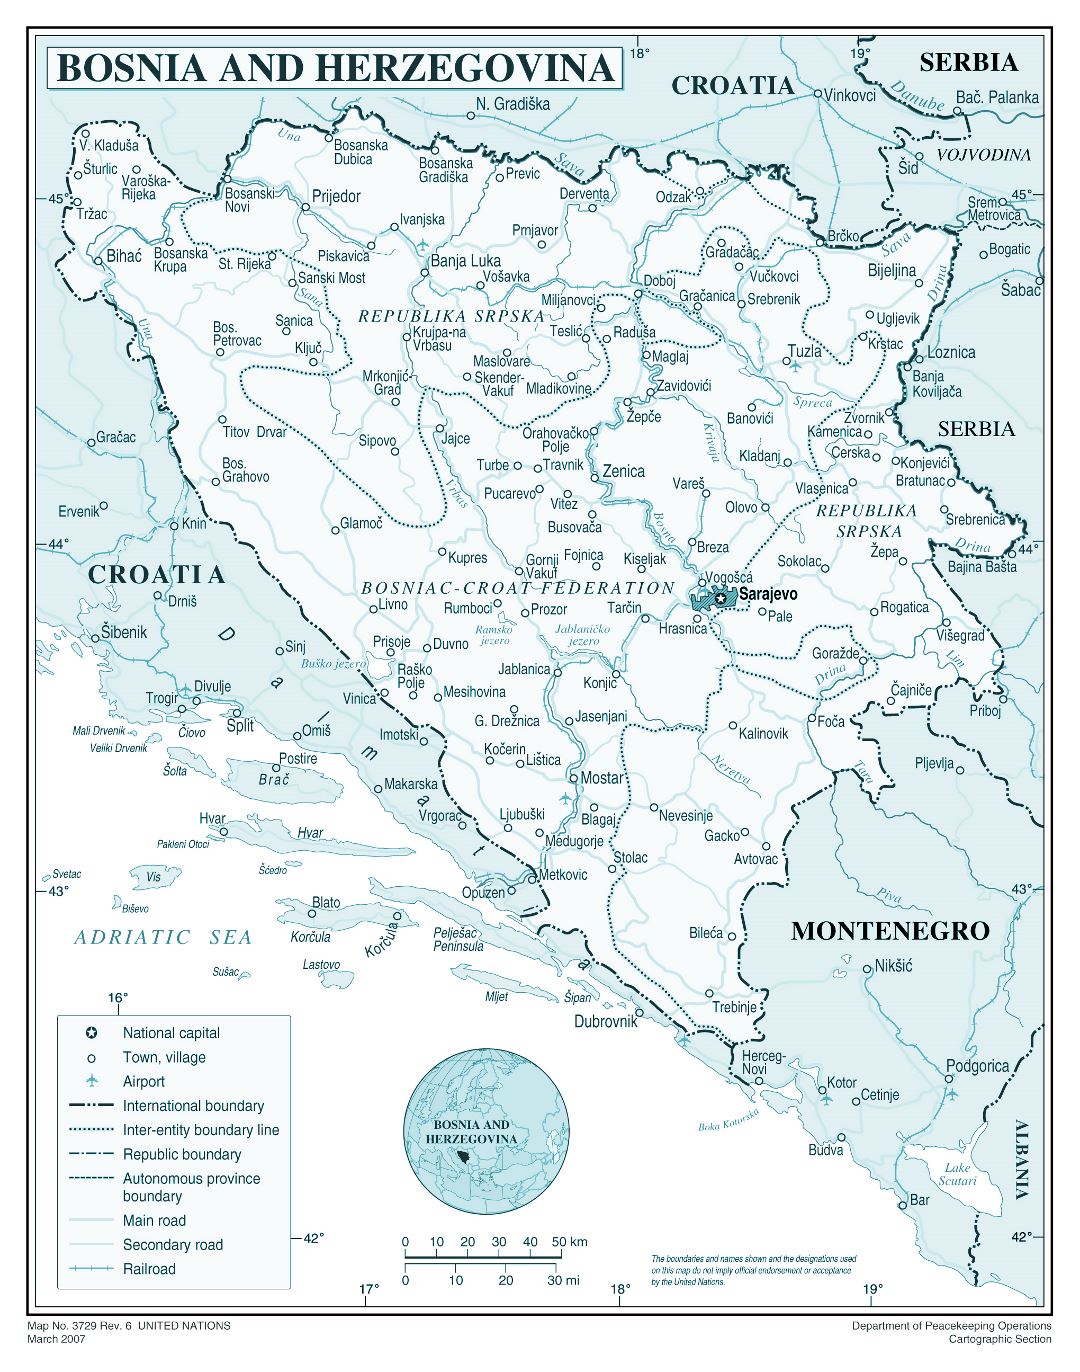 Mapa político y administrativo detallada grande de Bosnia y Herzegovina con carreteras, ciudades y aeropuertos